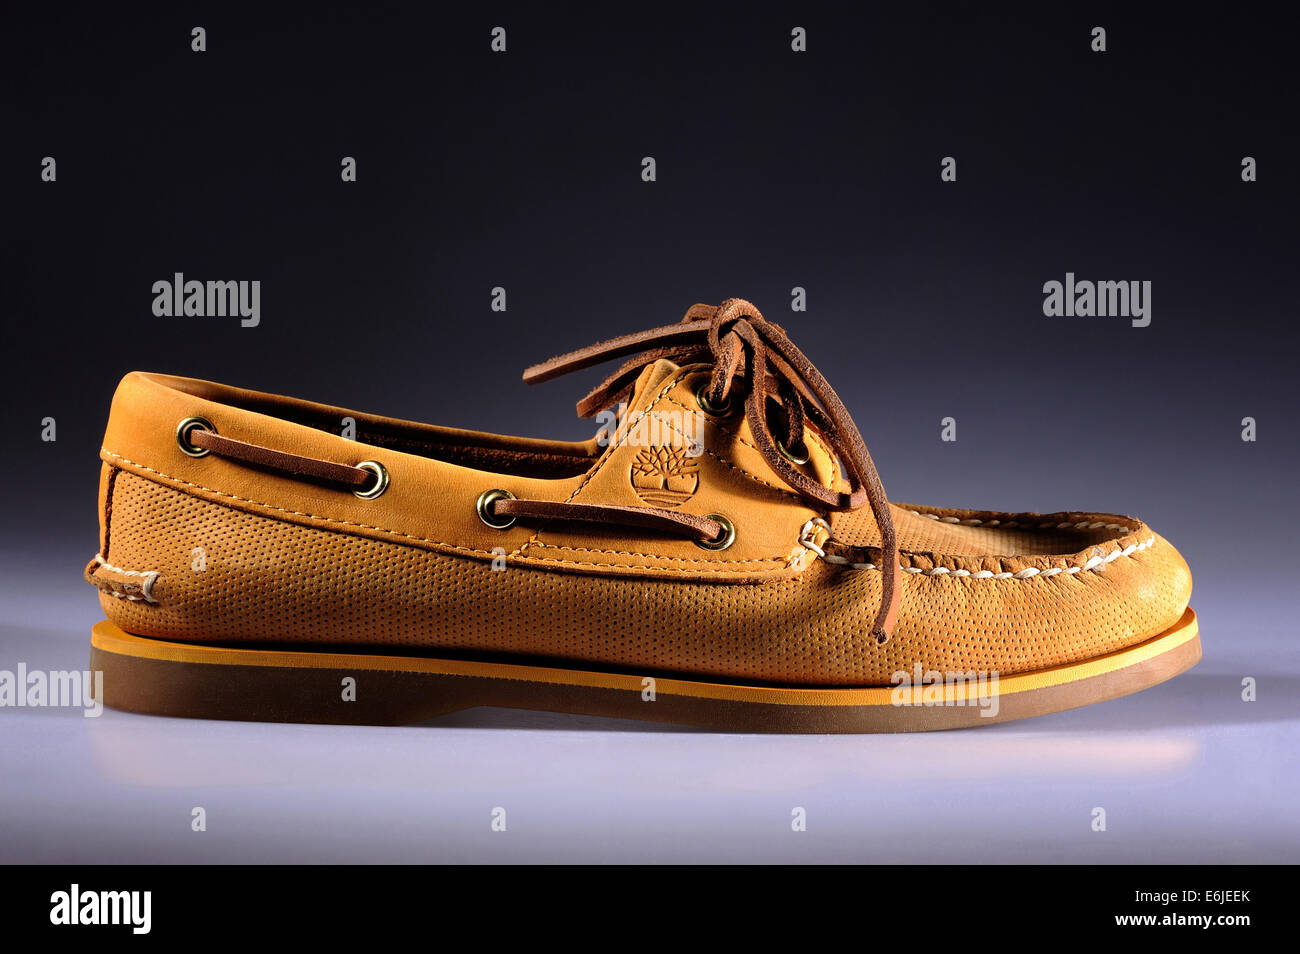 Zapato clásico fotografías imágenes alta resolución - Alamy